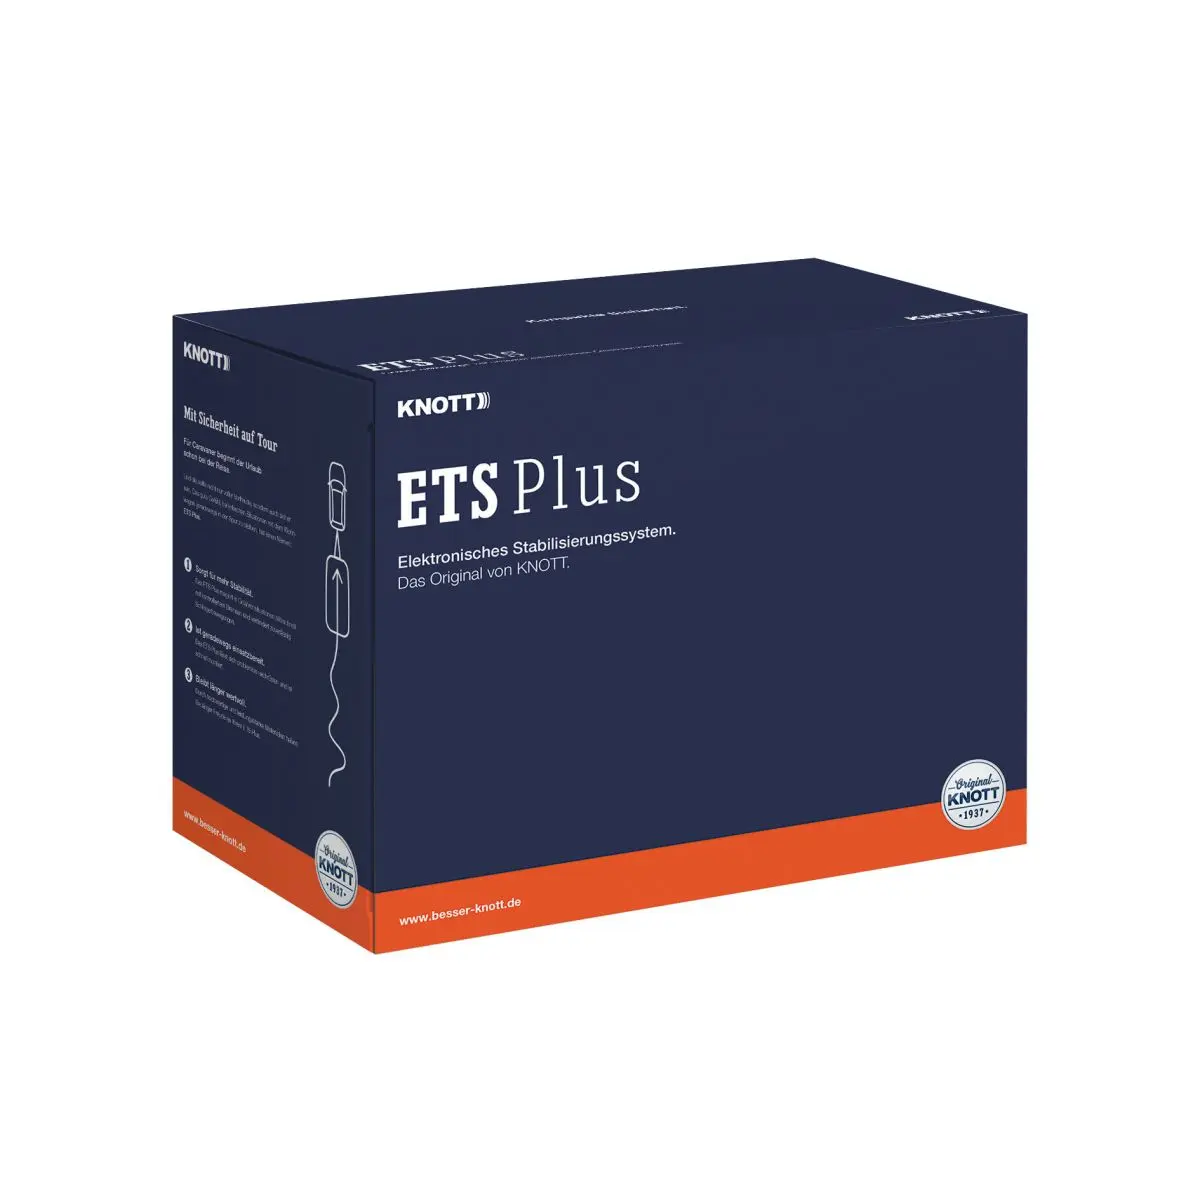 ETS Plus stabilizáló rendszer - tömeg 1401 - 1800 kg